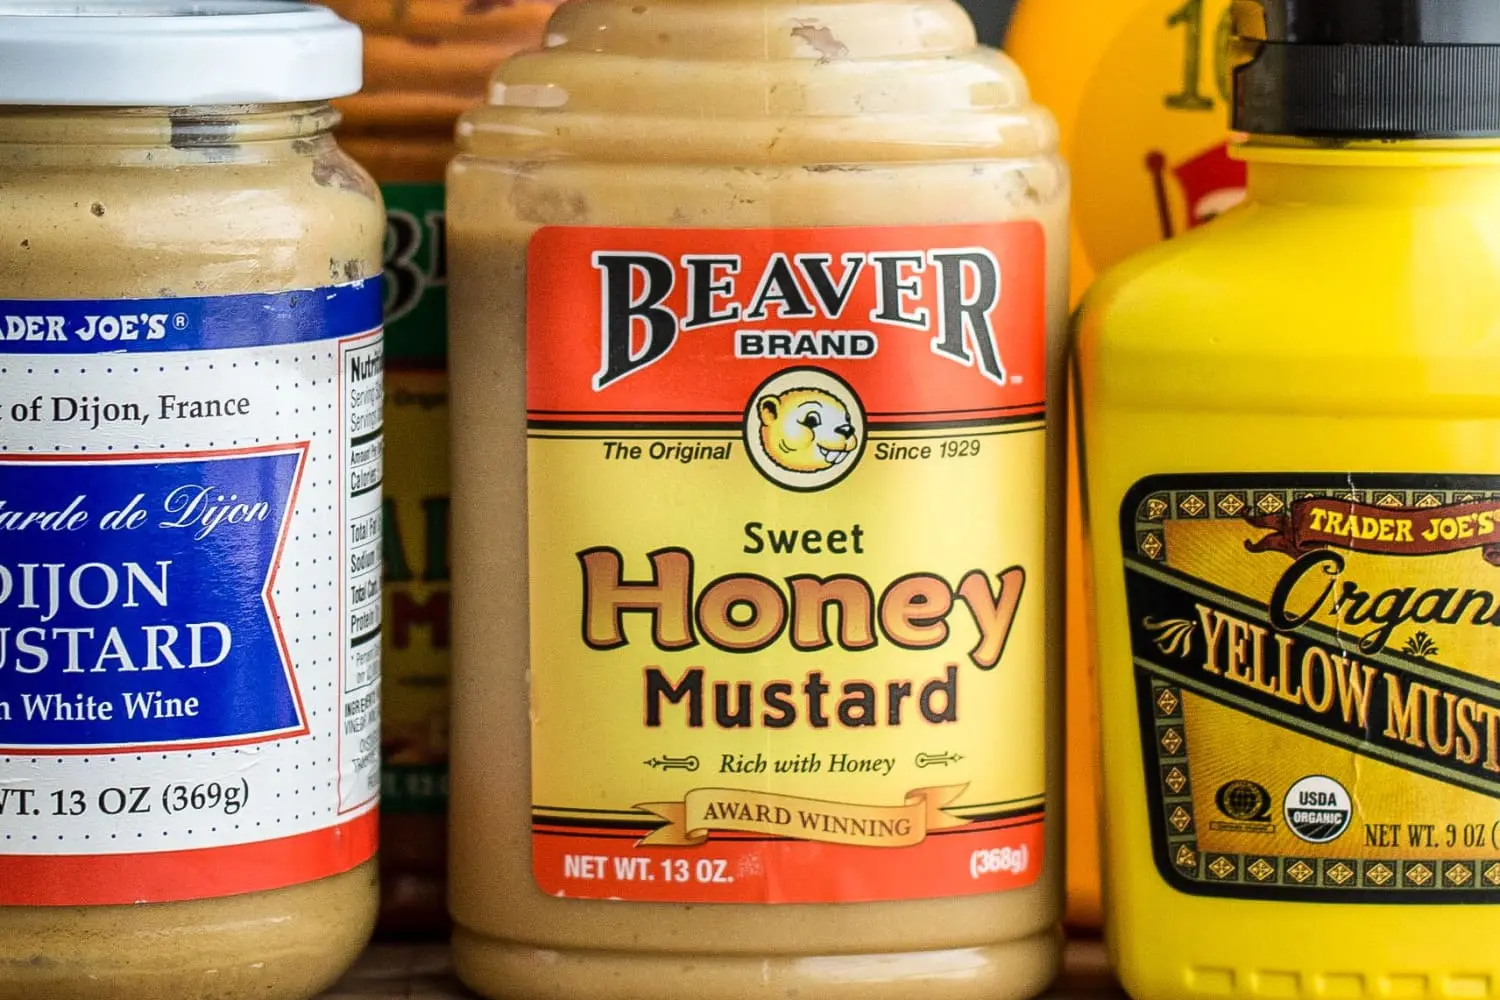 smoked mustard sauce - How do you eat mustard sauce